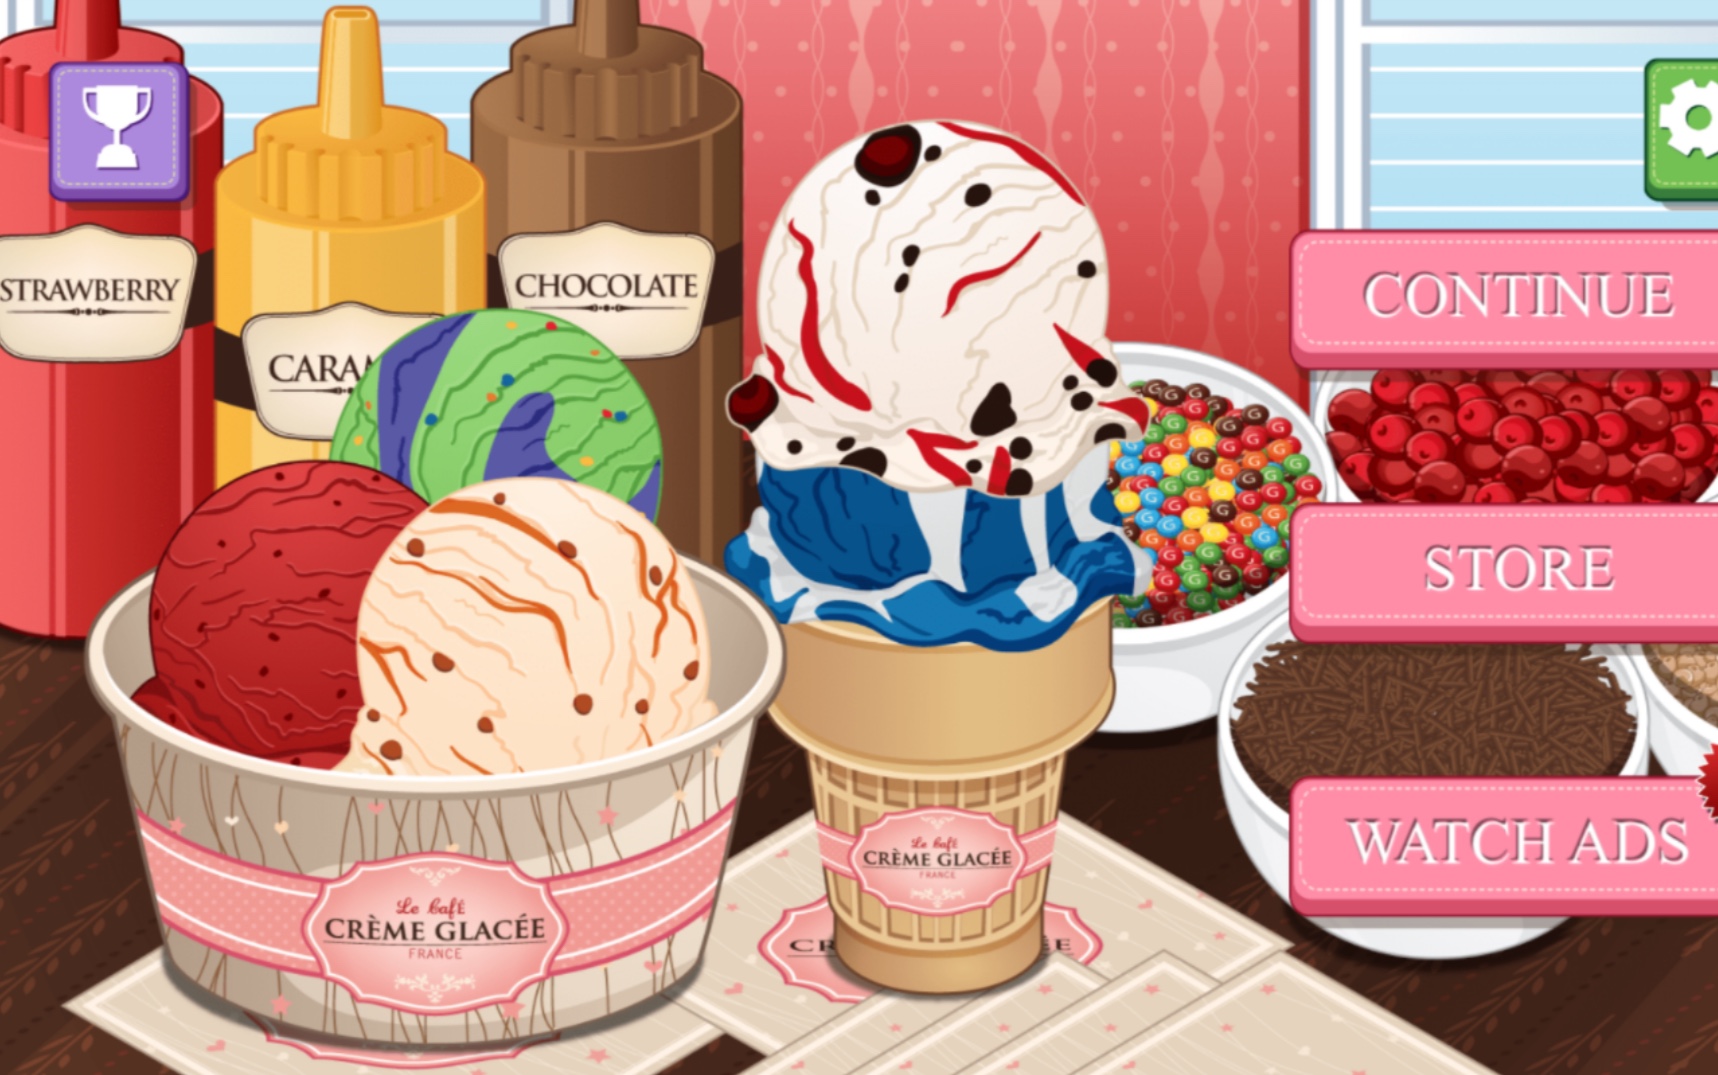 啊啊啊，我的梦中情游，炒鸡可爱的制作冰淇淋游戏！解压治愈游戏又加一个啦！！！